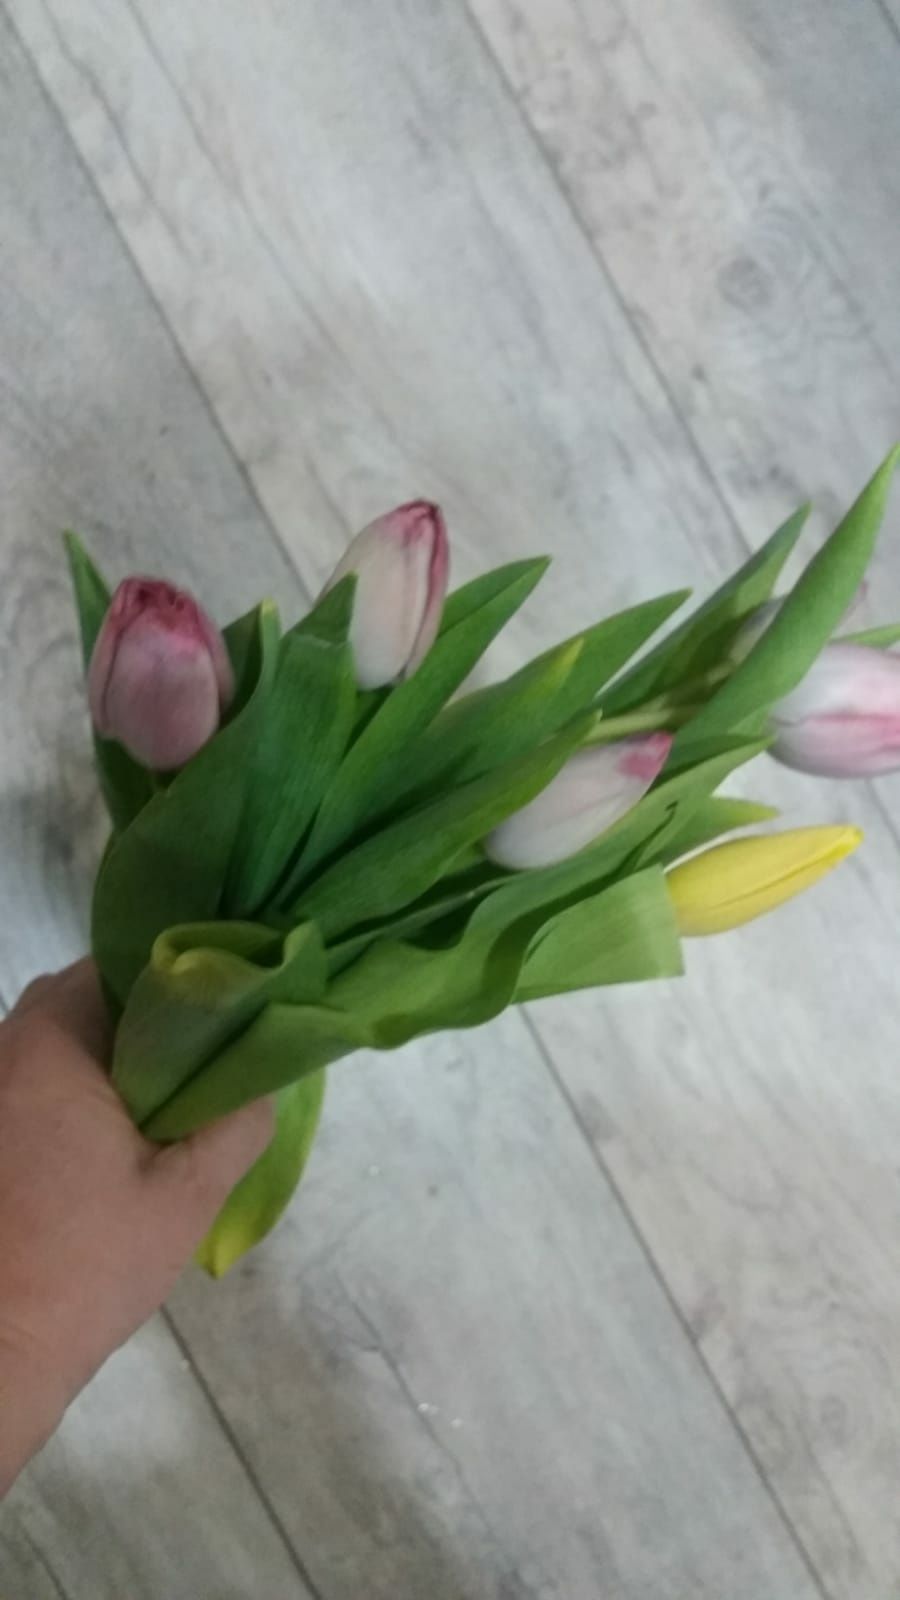 доставка цветов мелких посылок груза еды писем и т.д по  г.Астана